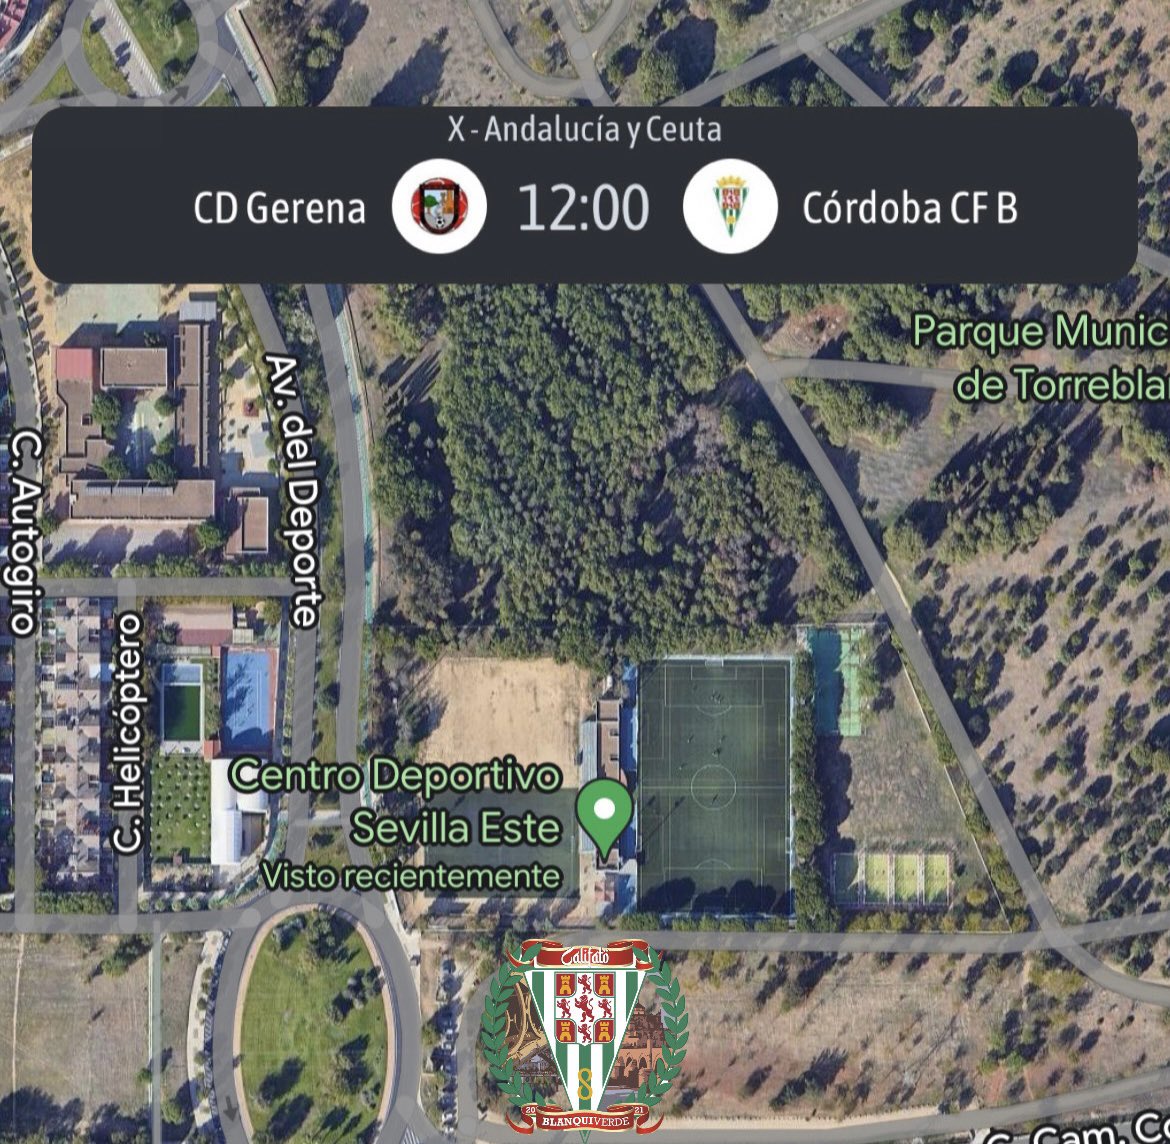 📅 ¡Tenemos una cita con el @Cantera_CCF!

Mañana, 1 de mayo, #CalifatoBlanquiverde estará en Sevilla Este animando a los chicos del filial para buscar llevarse los tres puntos en el #GerenaCCFB 

📌 𝘊𝘦𝘯𝘵𝘳𝘰 𝘋𝘦𝘱𝘰𝘳𝘵𝘪𝘷𝘰 𝘚𝘦𝘷𝘪𝘭𝘭𝘢 𝘌𝘴𝘵𝘦
⏰ 𝟭𝟮:𝟬𝟬